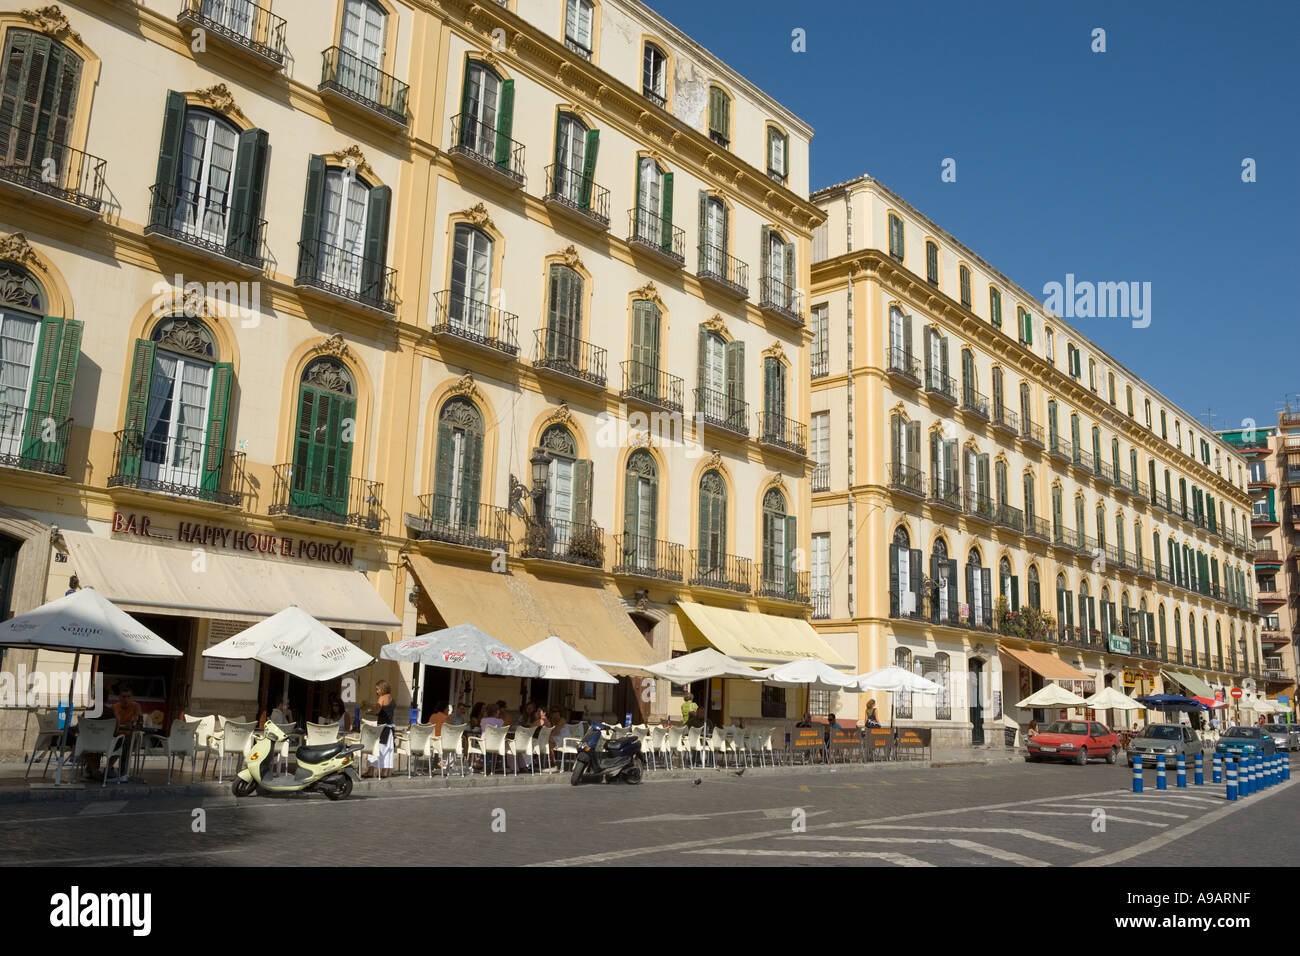 Malaga Costa del Sol Andalusia Spain Nineteenth century architecture in Plaza de la Merced Stock Photo